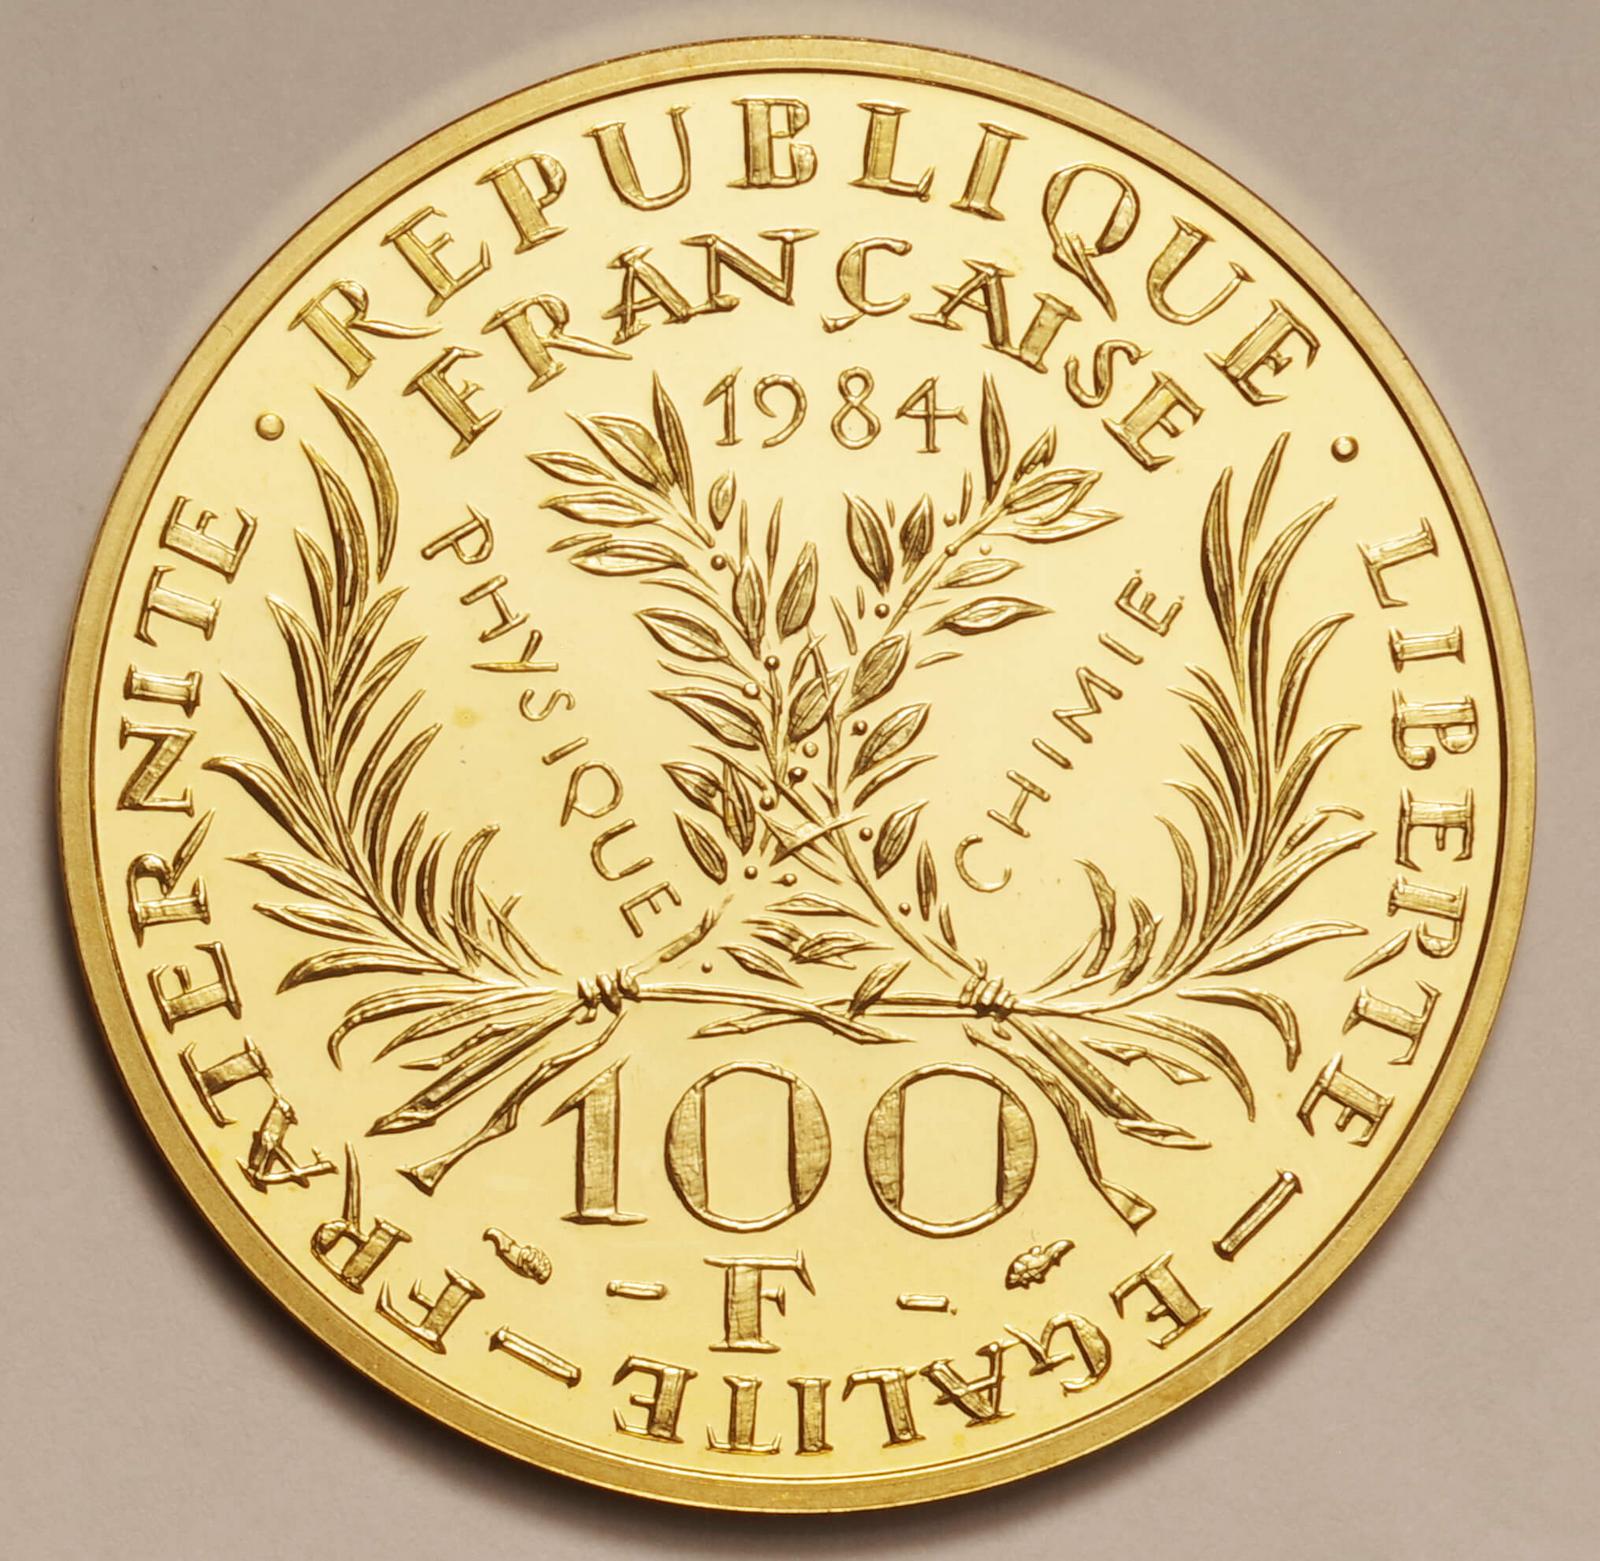 フランス-France. キュリー夫人追悼50年記念 100フラン金貨 1984年 